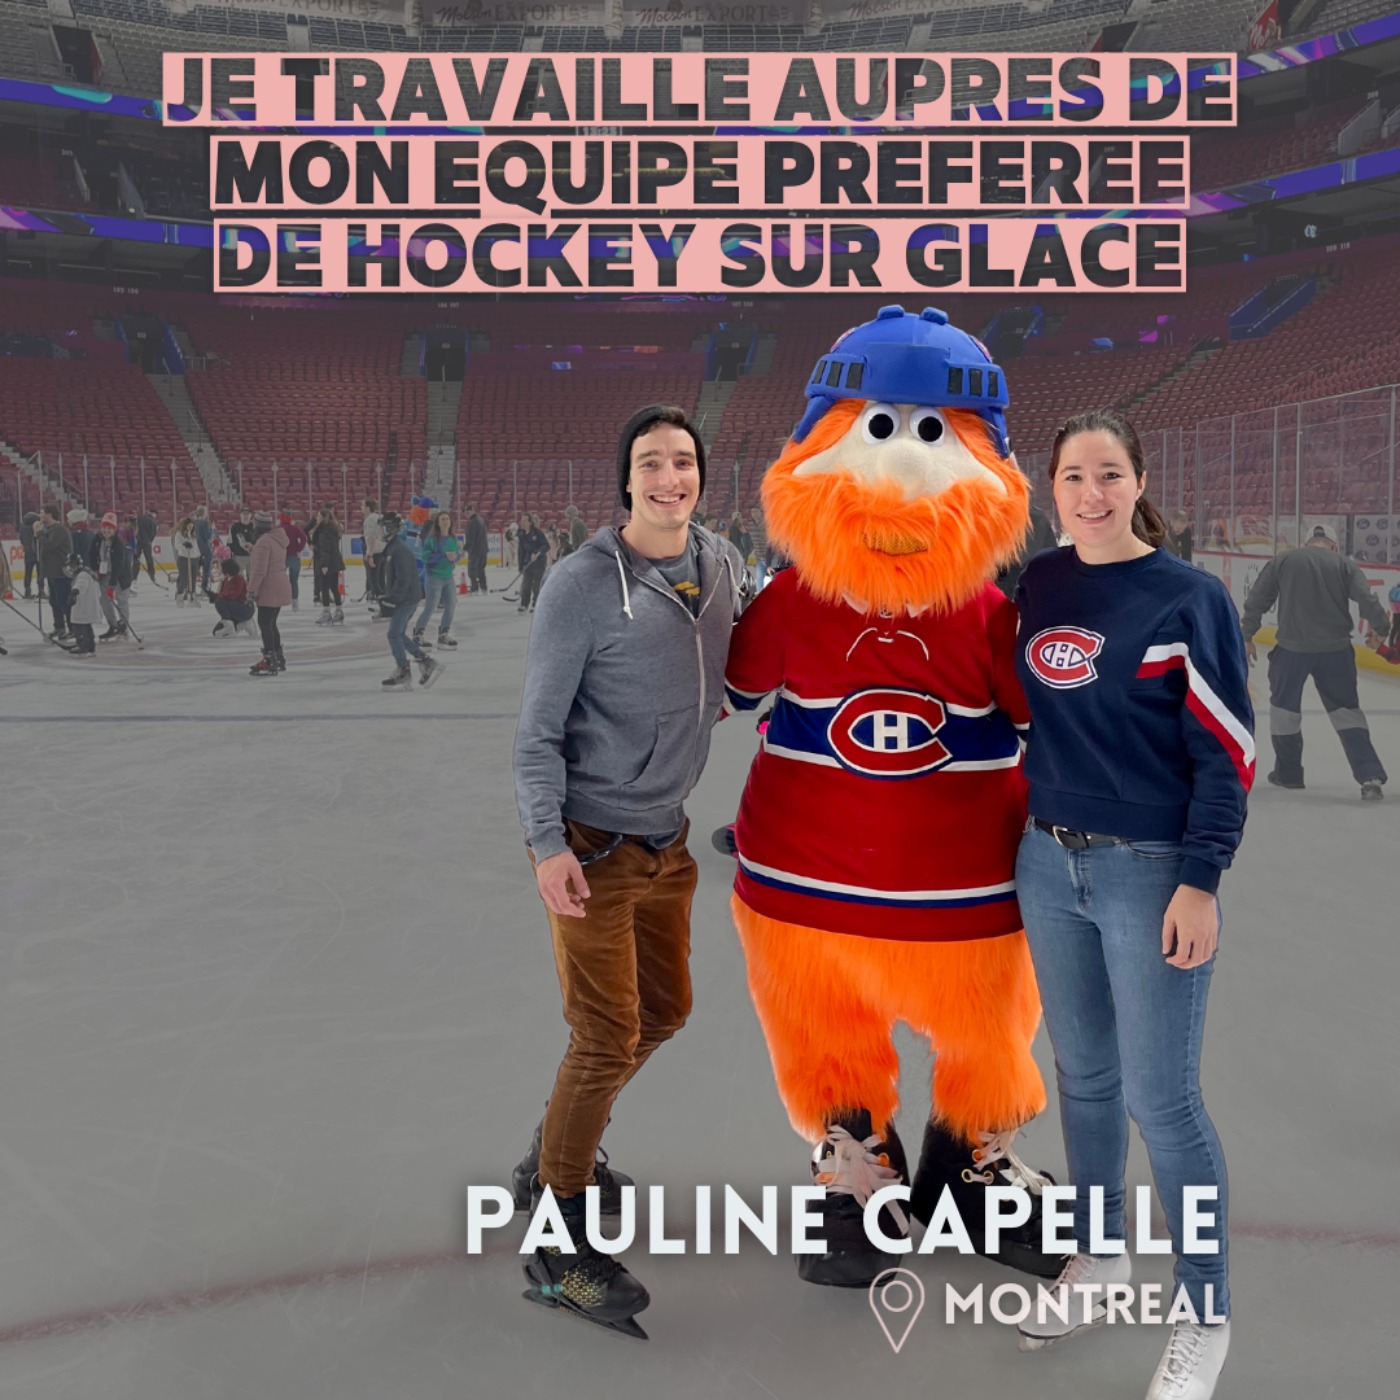 Pauline Capelle (Montréal) : Quitter l'hôtellerie pour travailler avec les Canadiens de Montréal